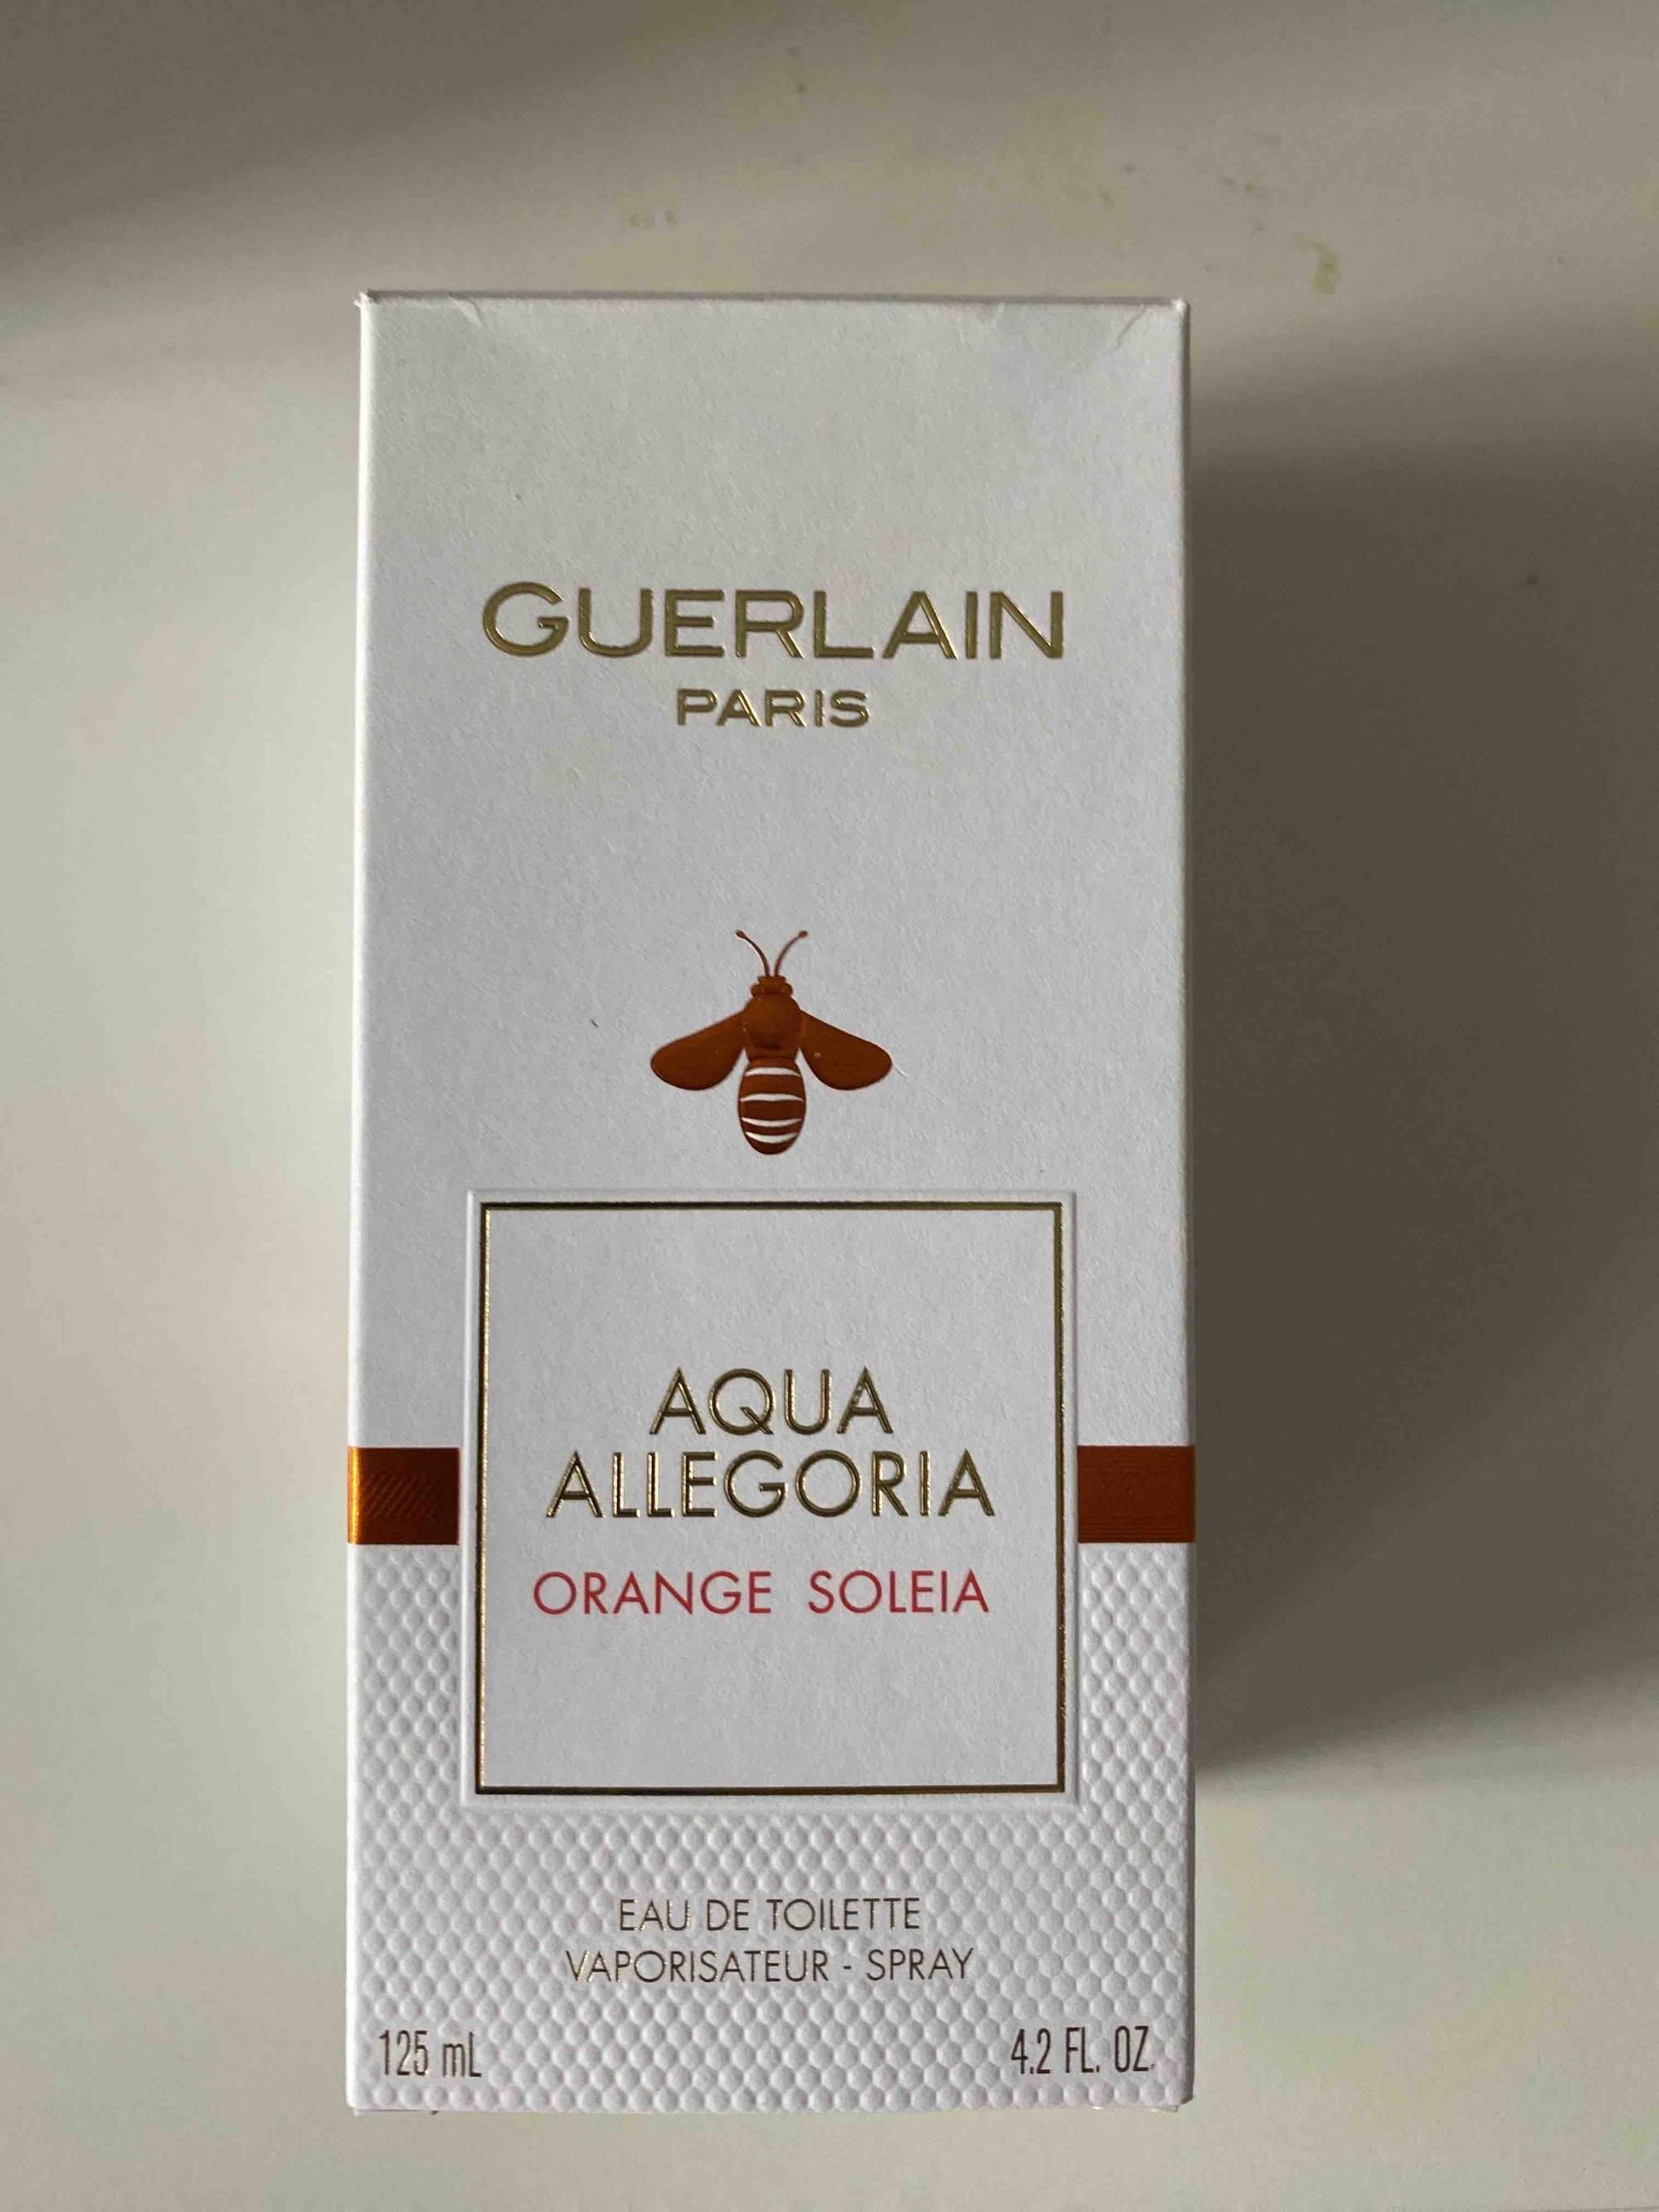 GUERLAIN - Aqua allegoria - Eau de toilette